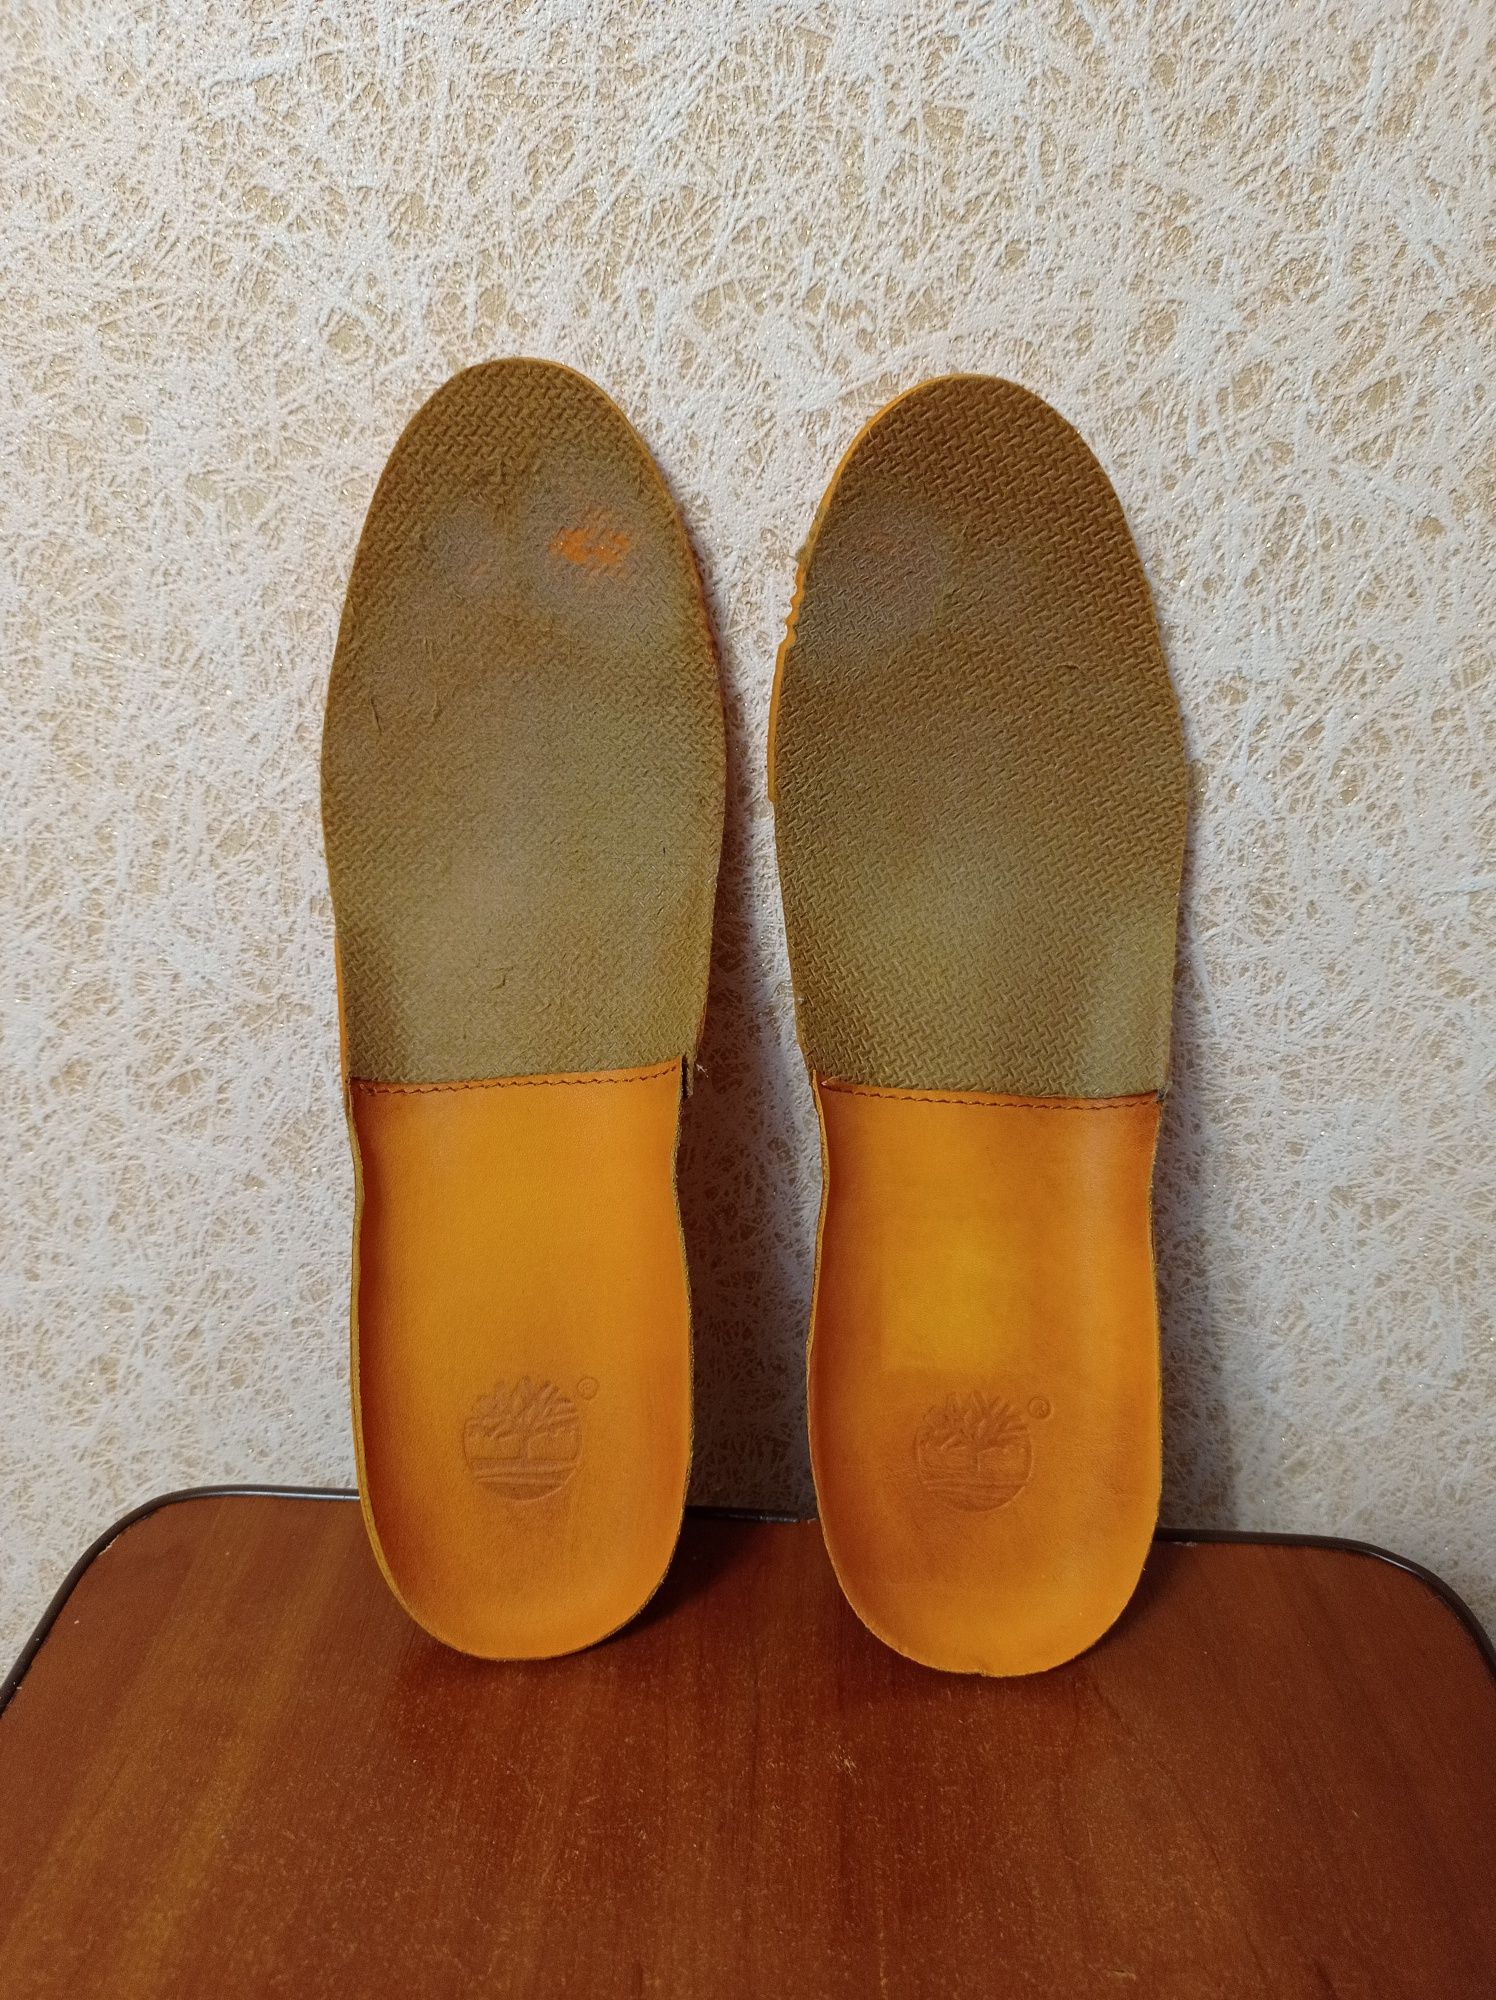 (р.7w) Ботинки Timberland Premium 6-inch, желтый